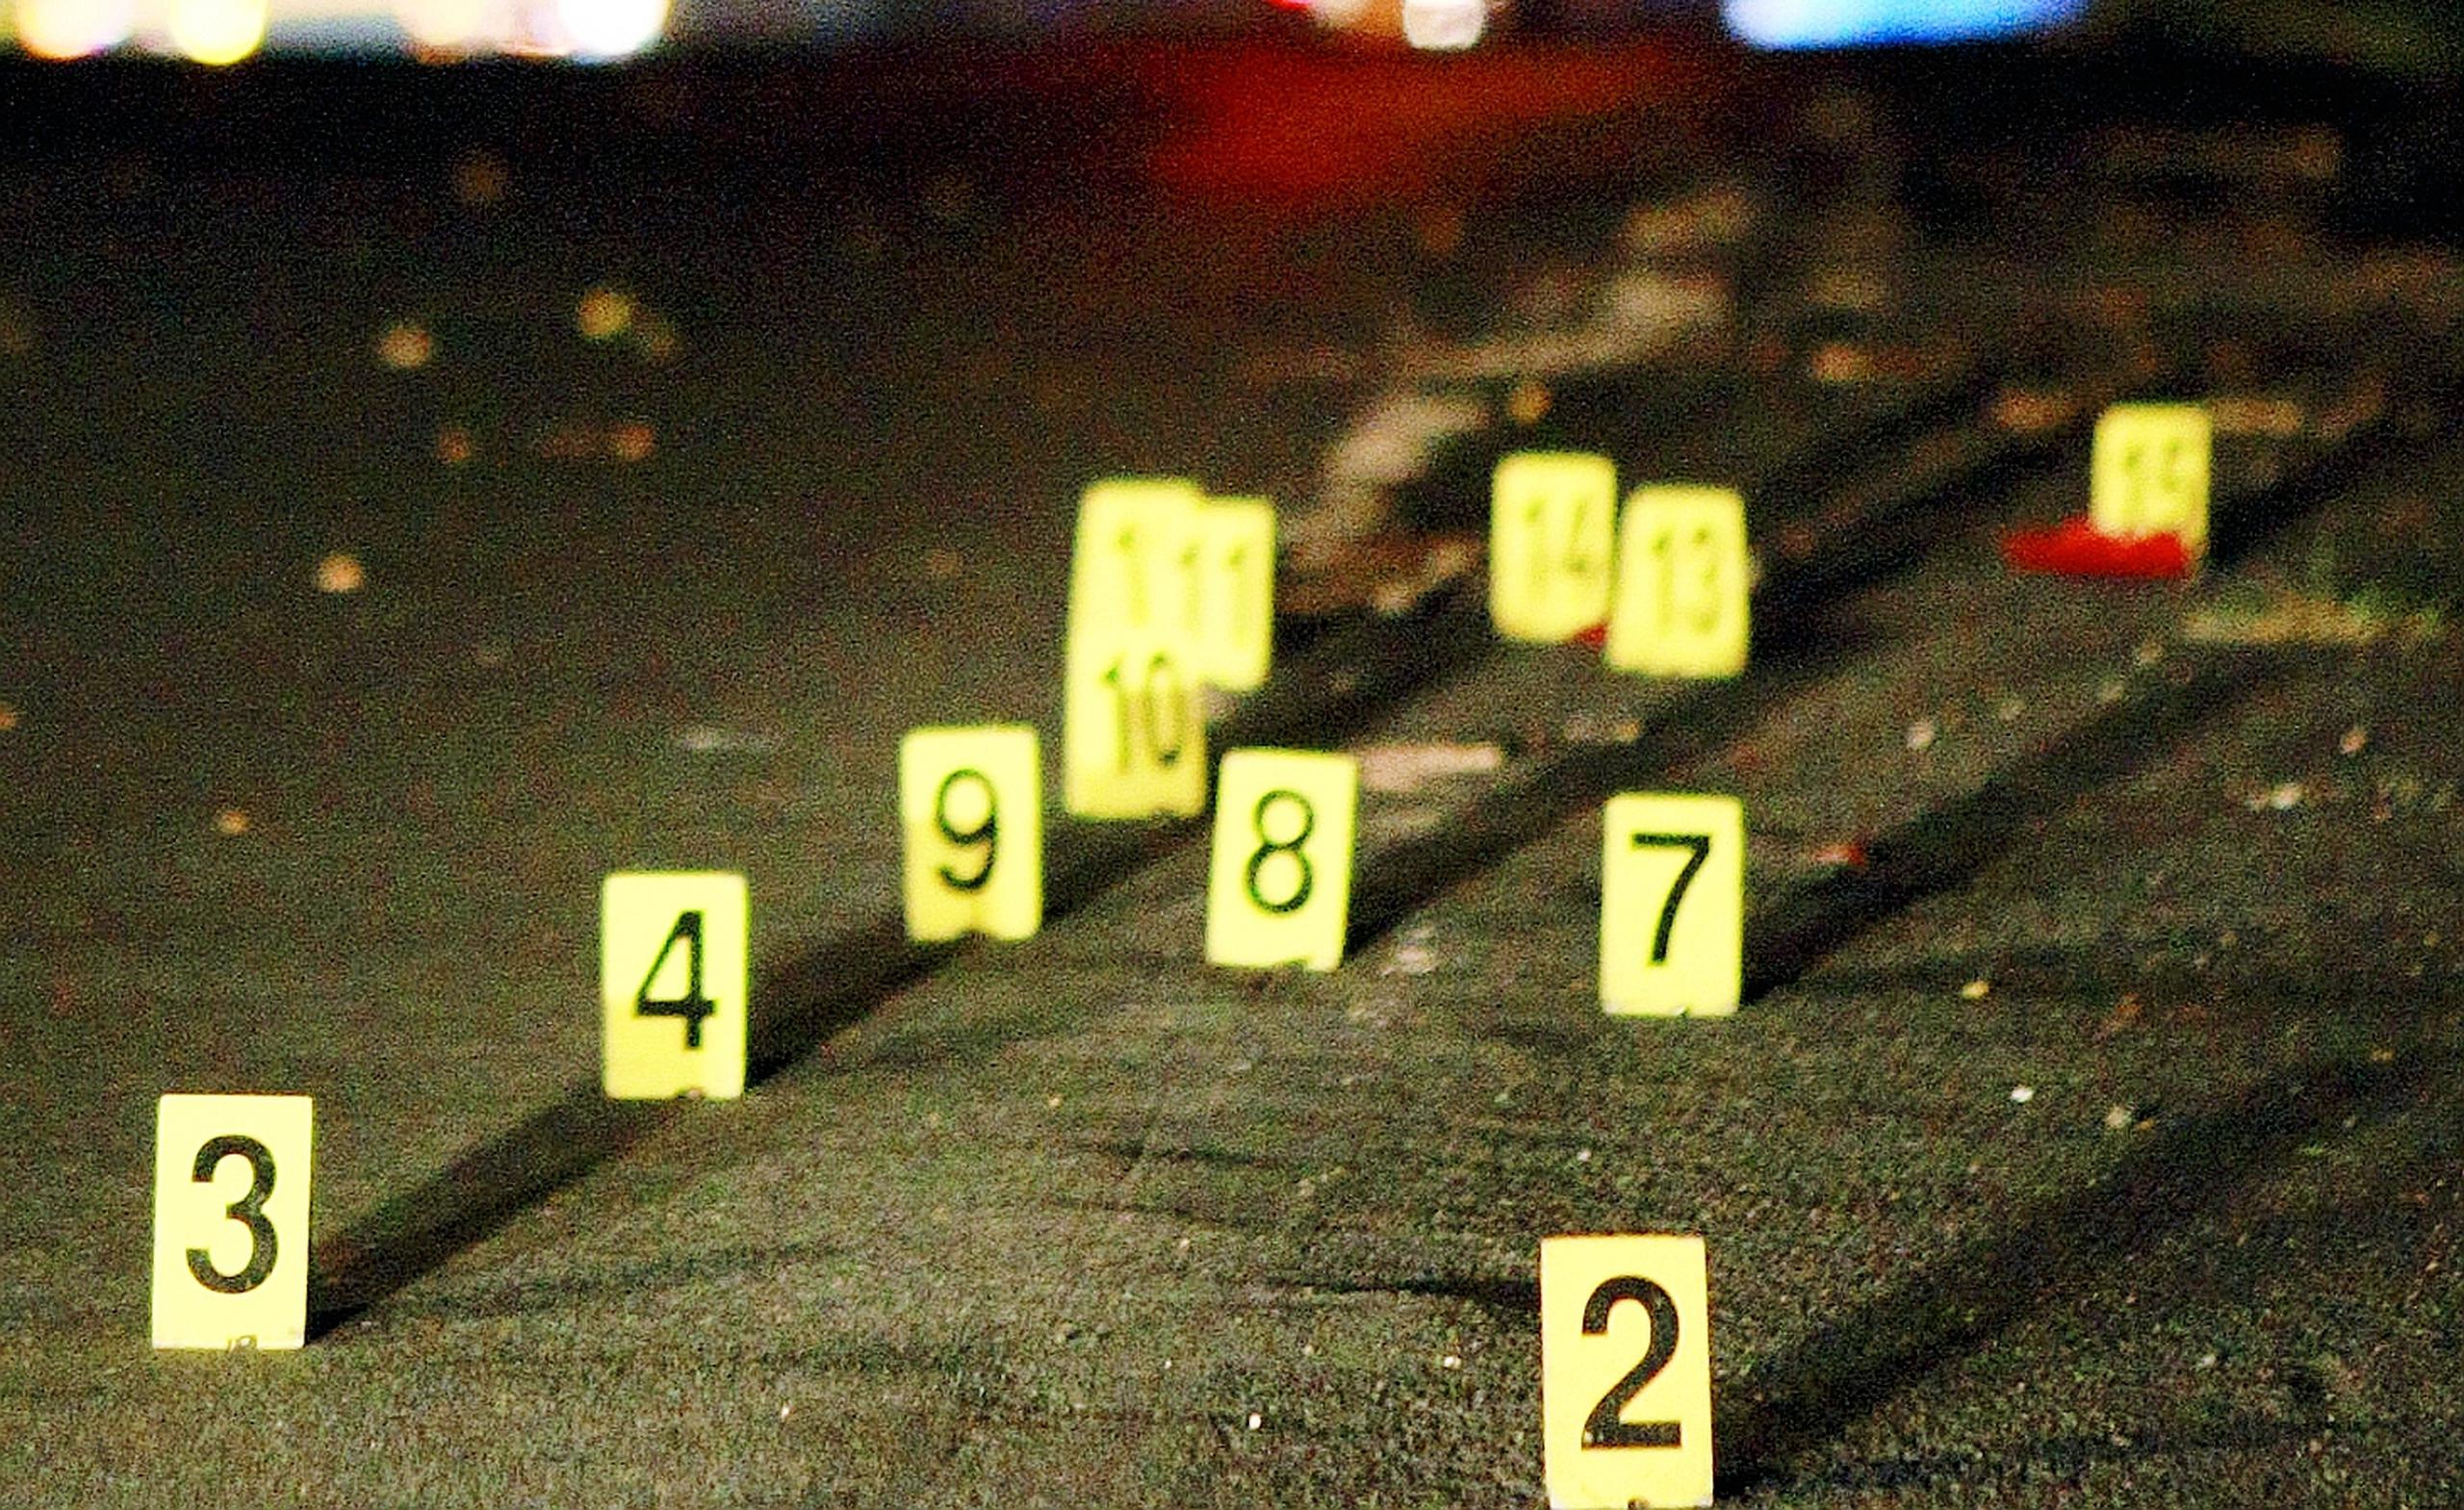 Una mujer fue asesinada a balazos en el kilómetro 3.9 de la carretera PR-854 en Toa Baja.
-----

-----